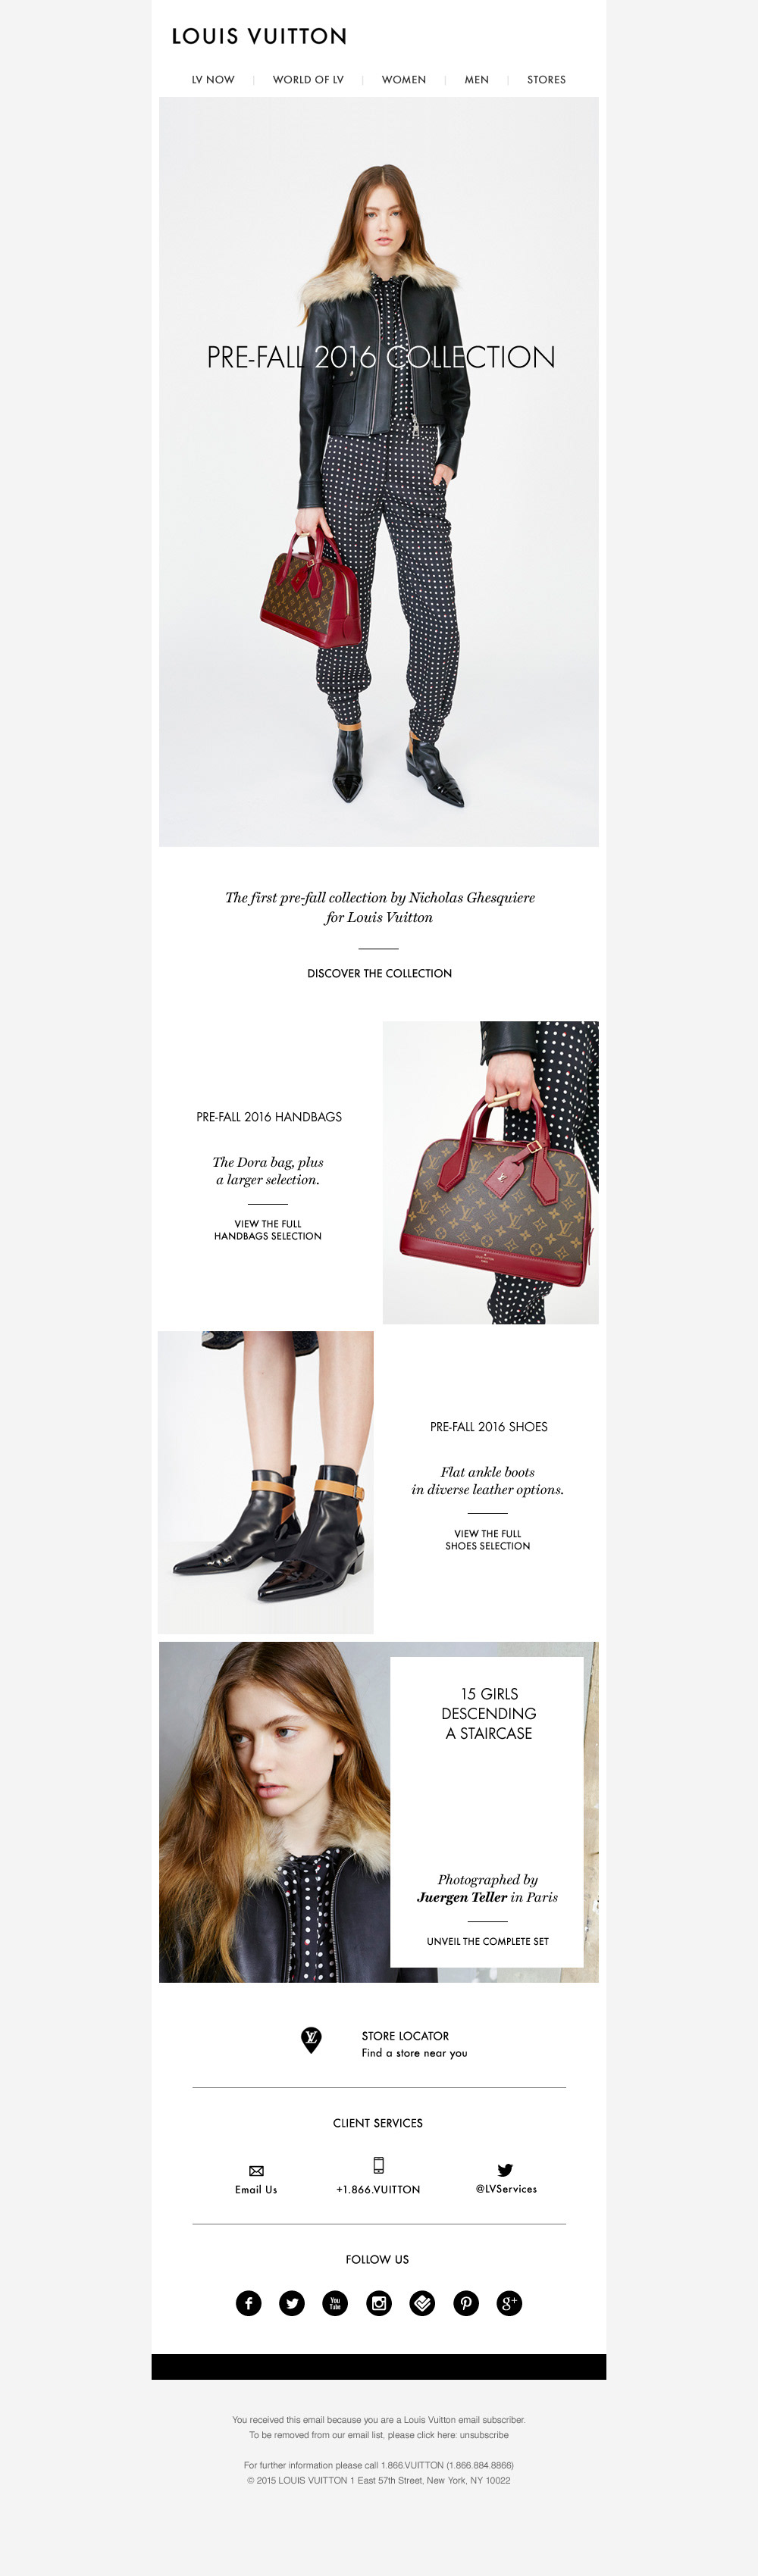 Louis Vuitton Us Official Website